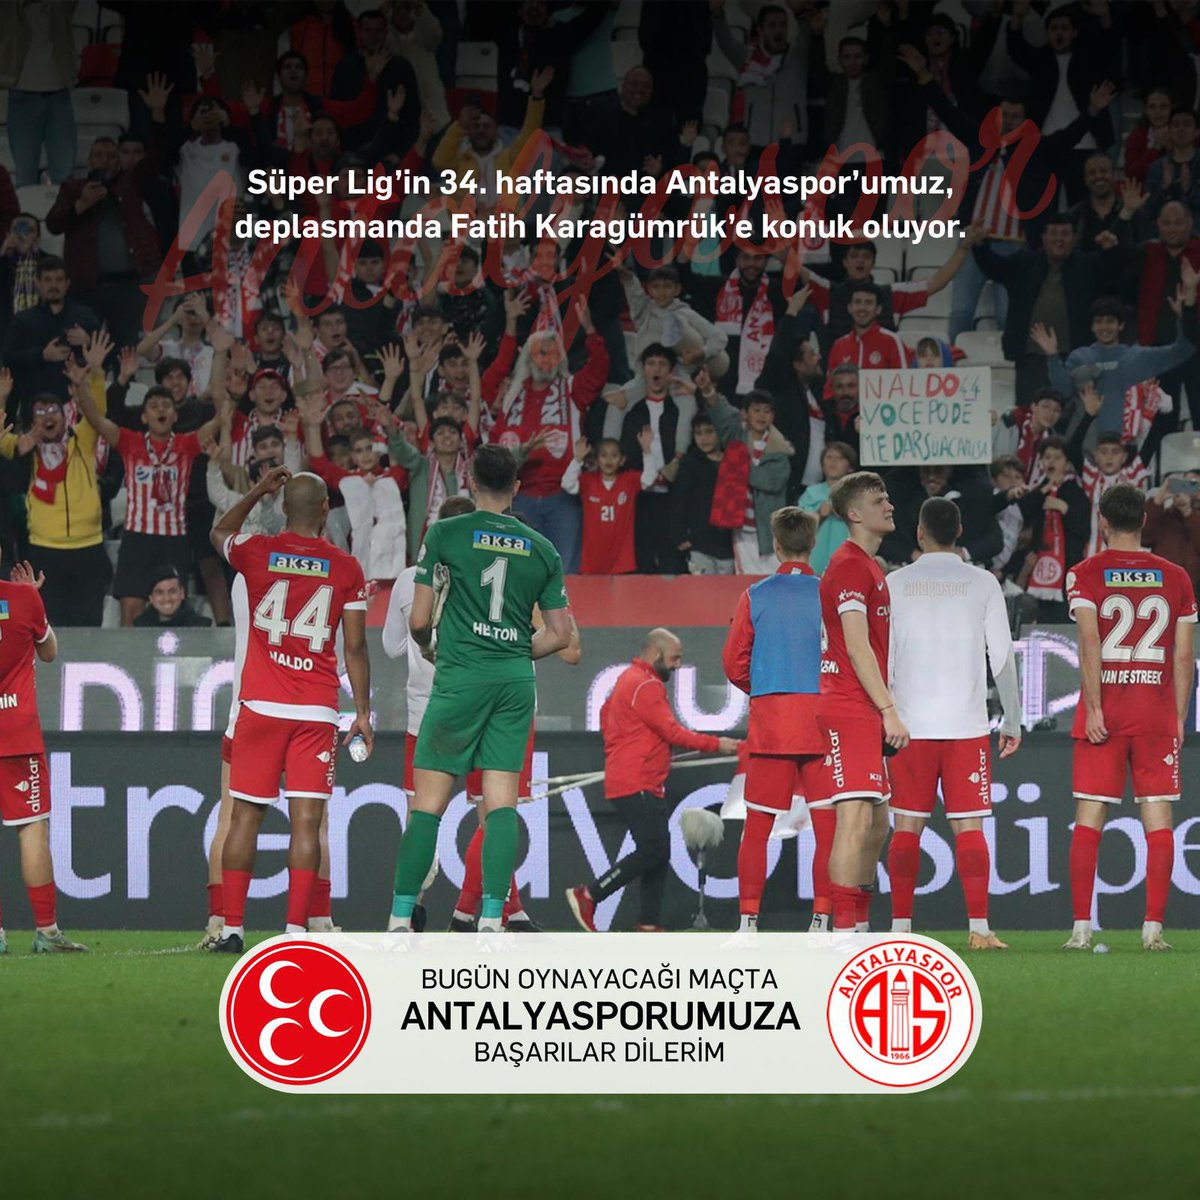 Süper Lig’in 34. haftasında Fatih Karagümrük Spor Kulübü’ne konuk olan Antalyaspor’umuza başarılar dilerim.